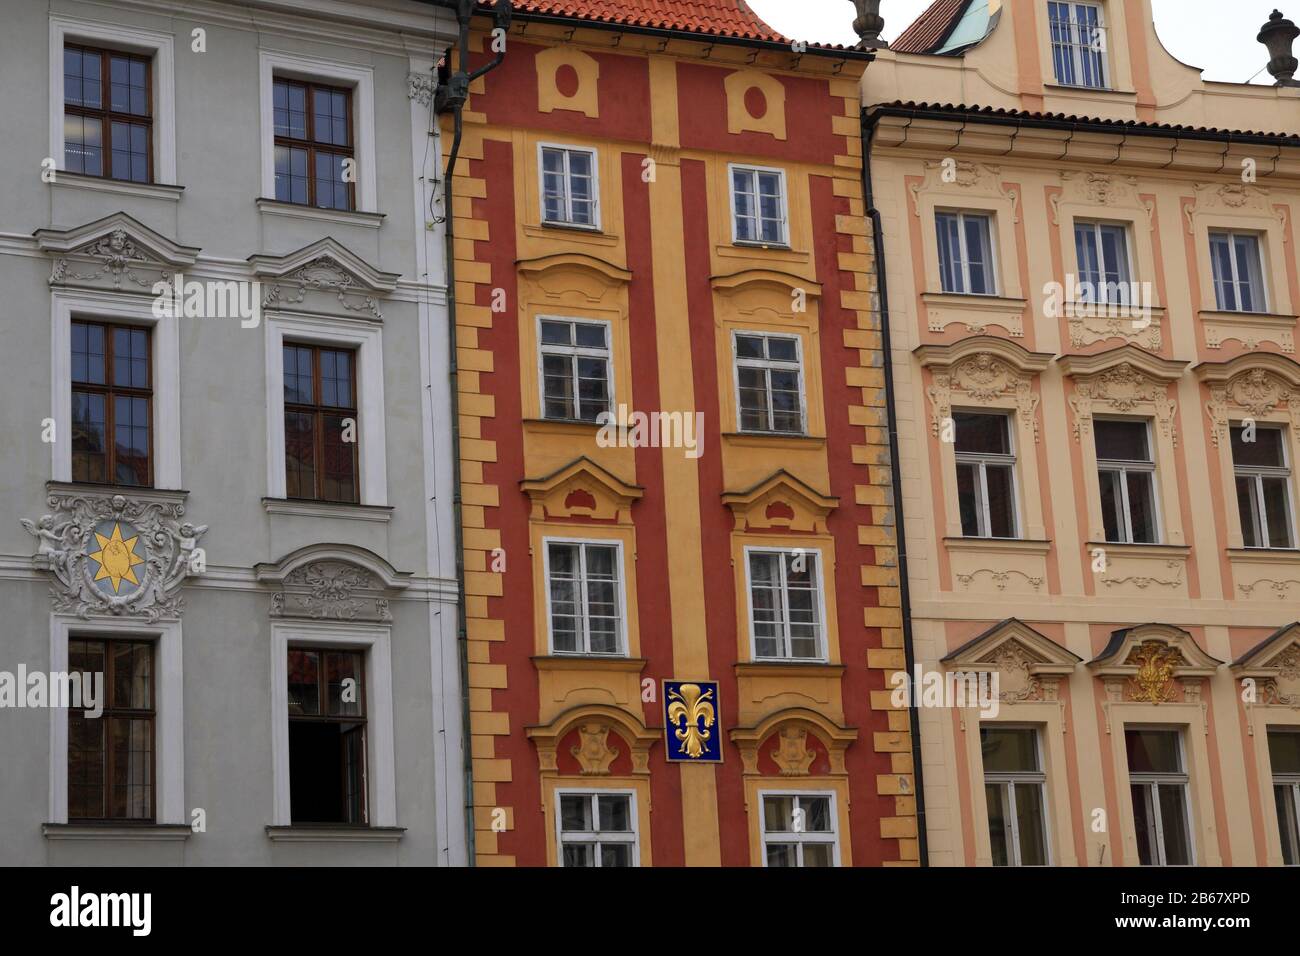 Traditional facade in the City, Prague, Bohemia, Czech Republic Stock Photo